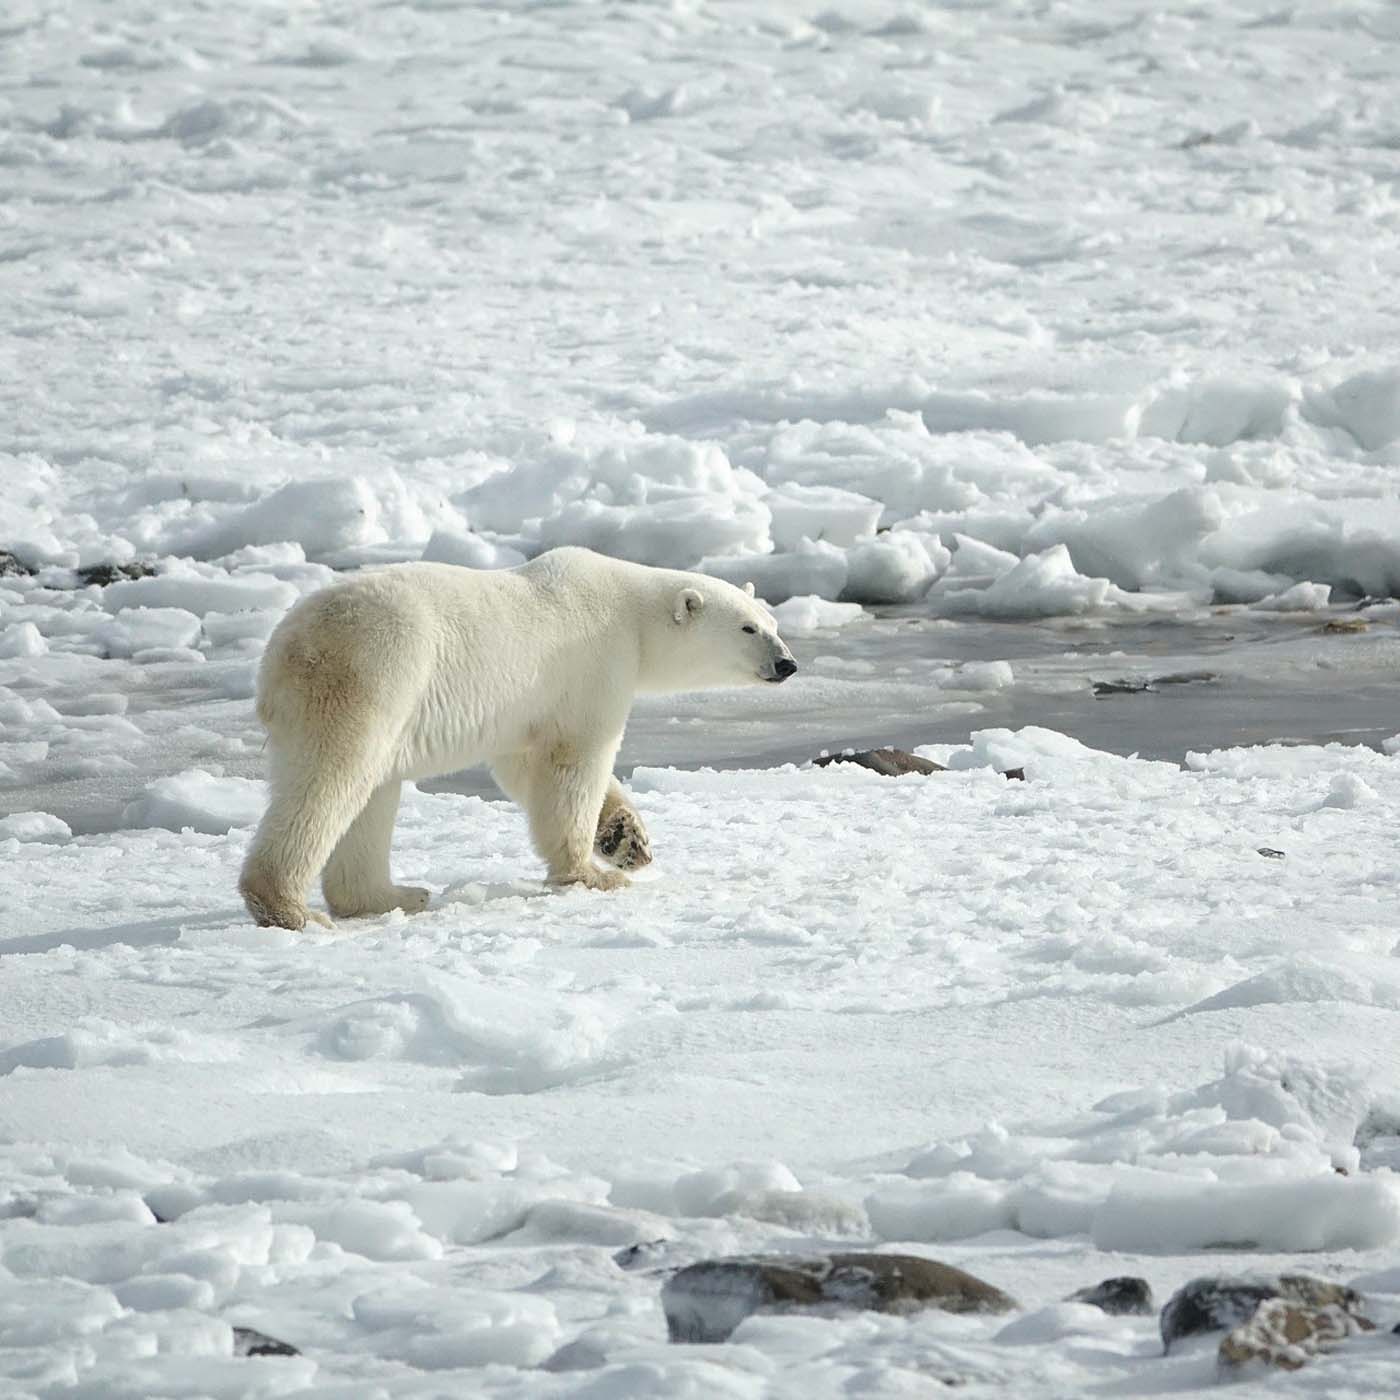 Polar bear roaming the ice